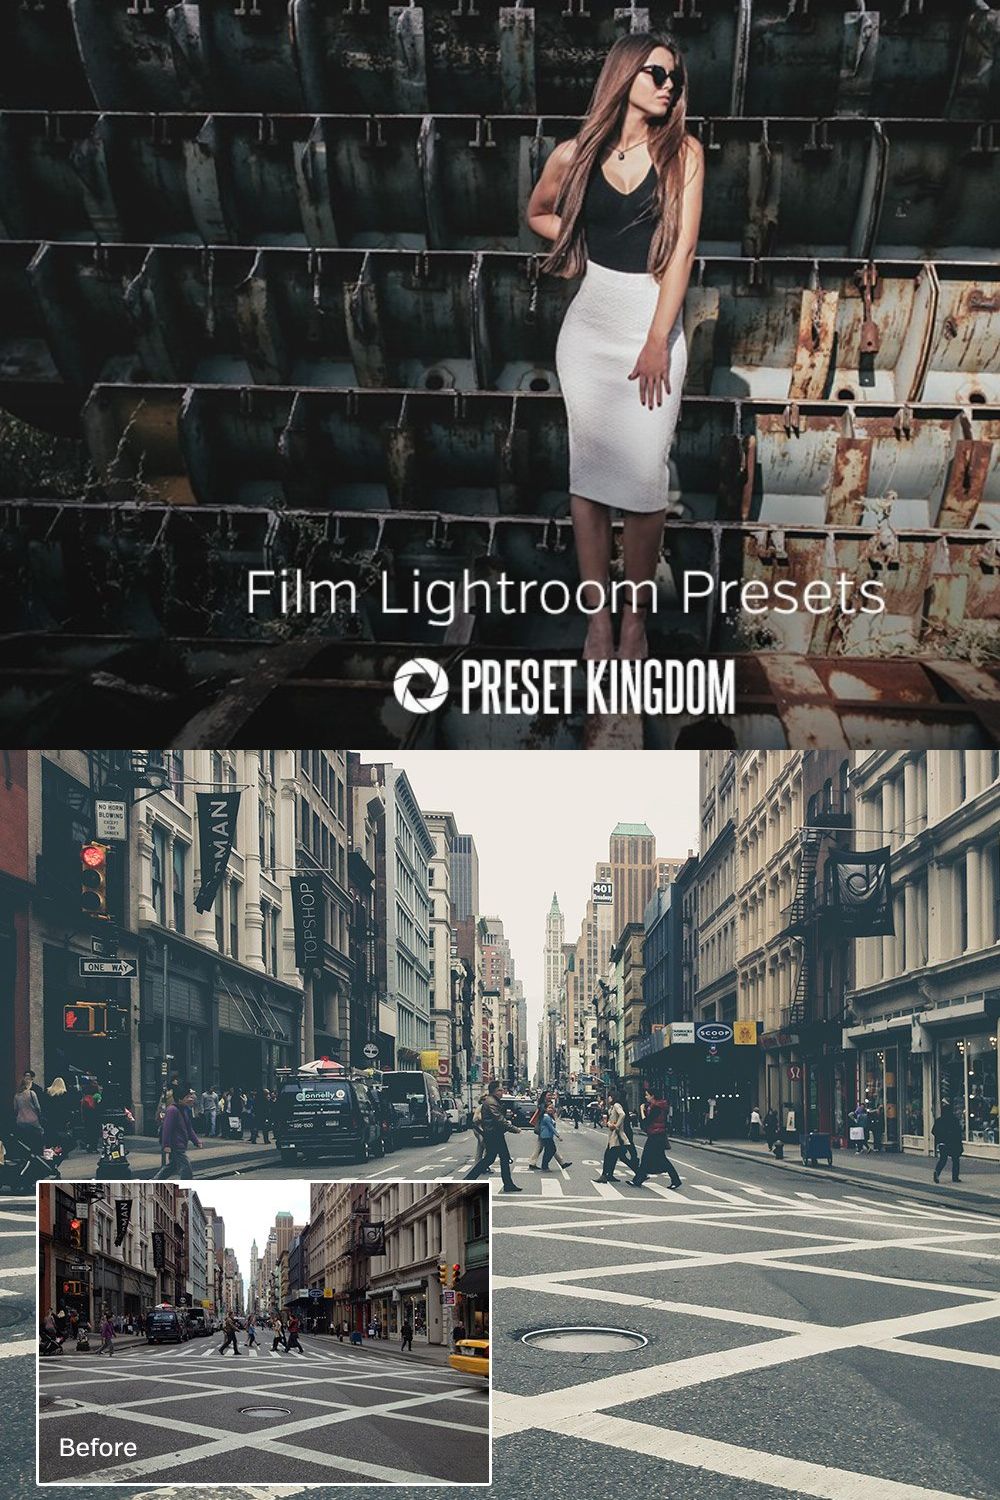 Film Lightroom Presets pinterest preview image.